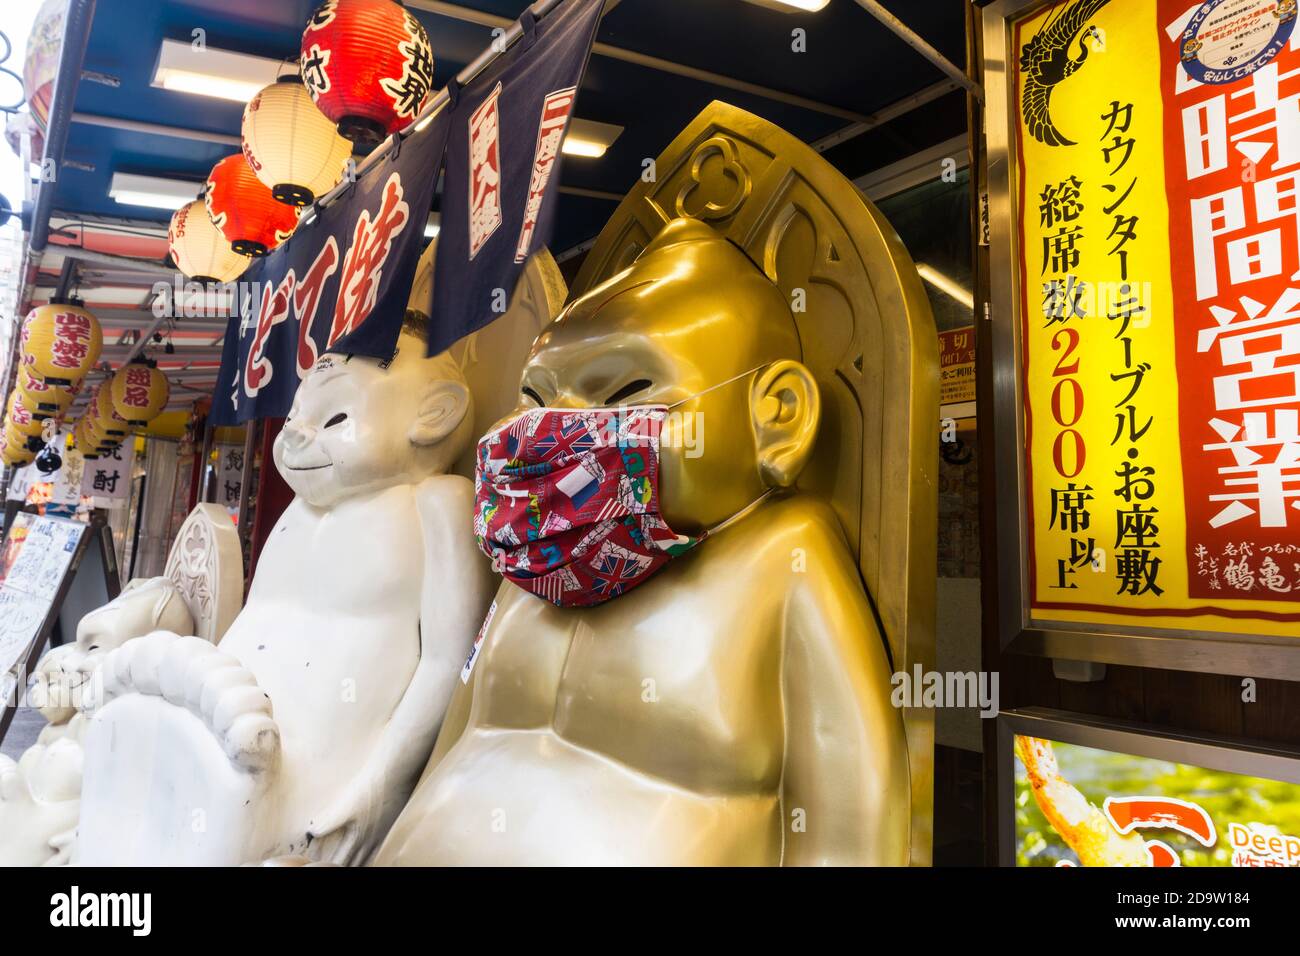 Statua del personaggio Billiken all'esterno di un ristorante nell'area di Shinsekai di Naniwa-ku, Osaka, Giappone che indossa una maschera durante la pandemia COVID-19 Foto Stock